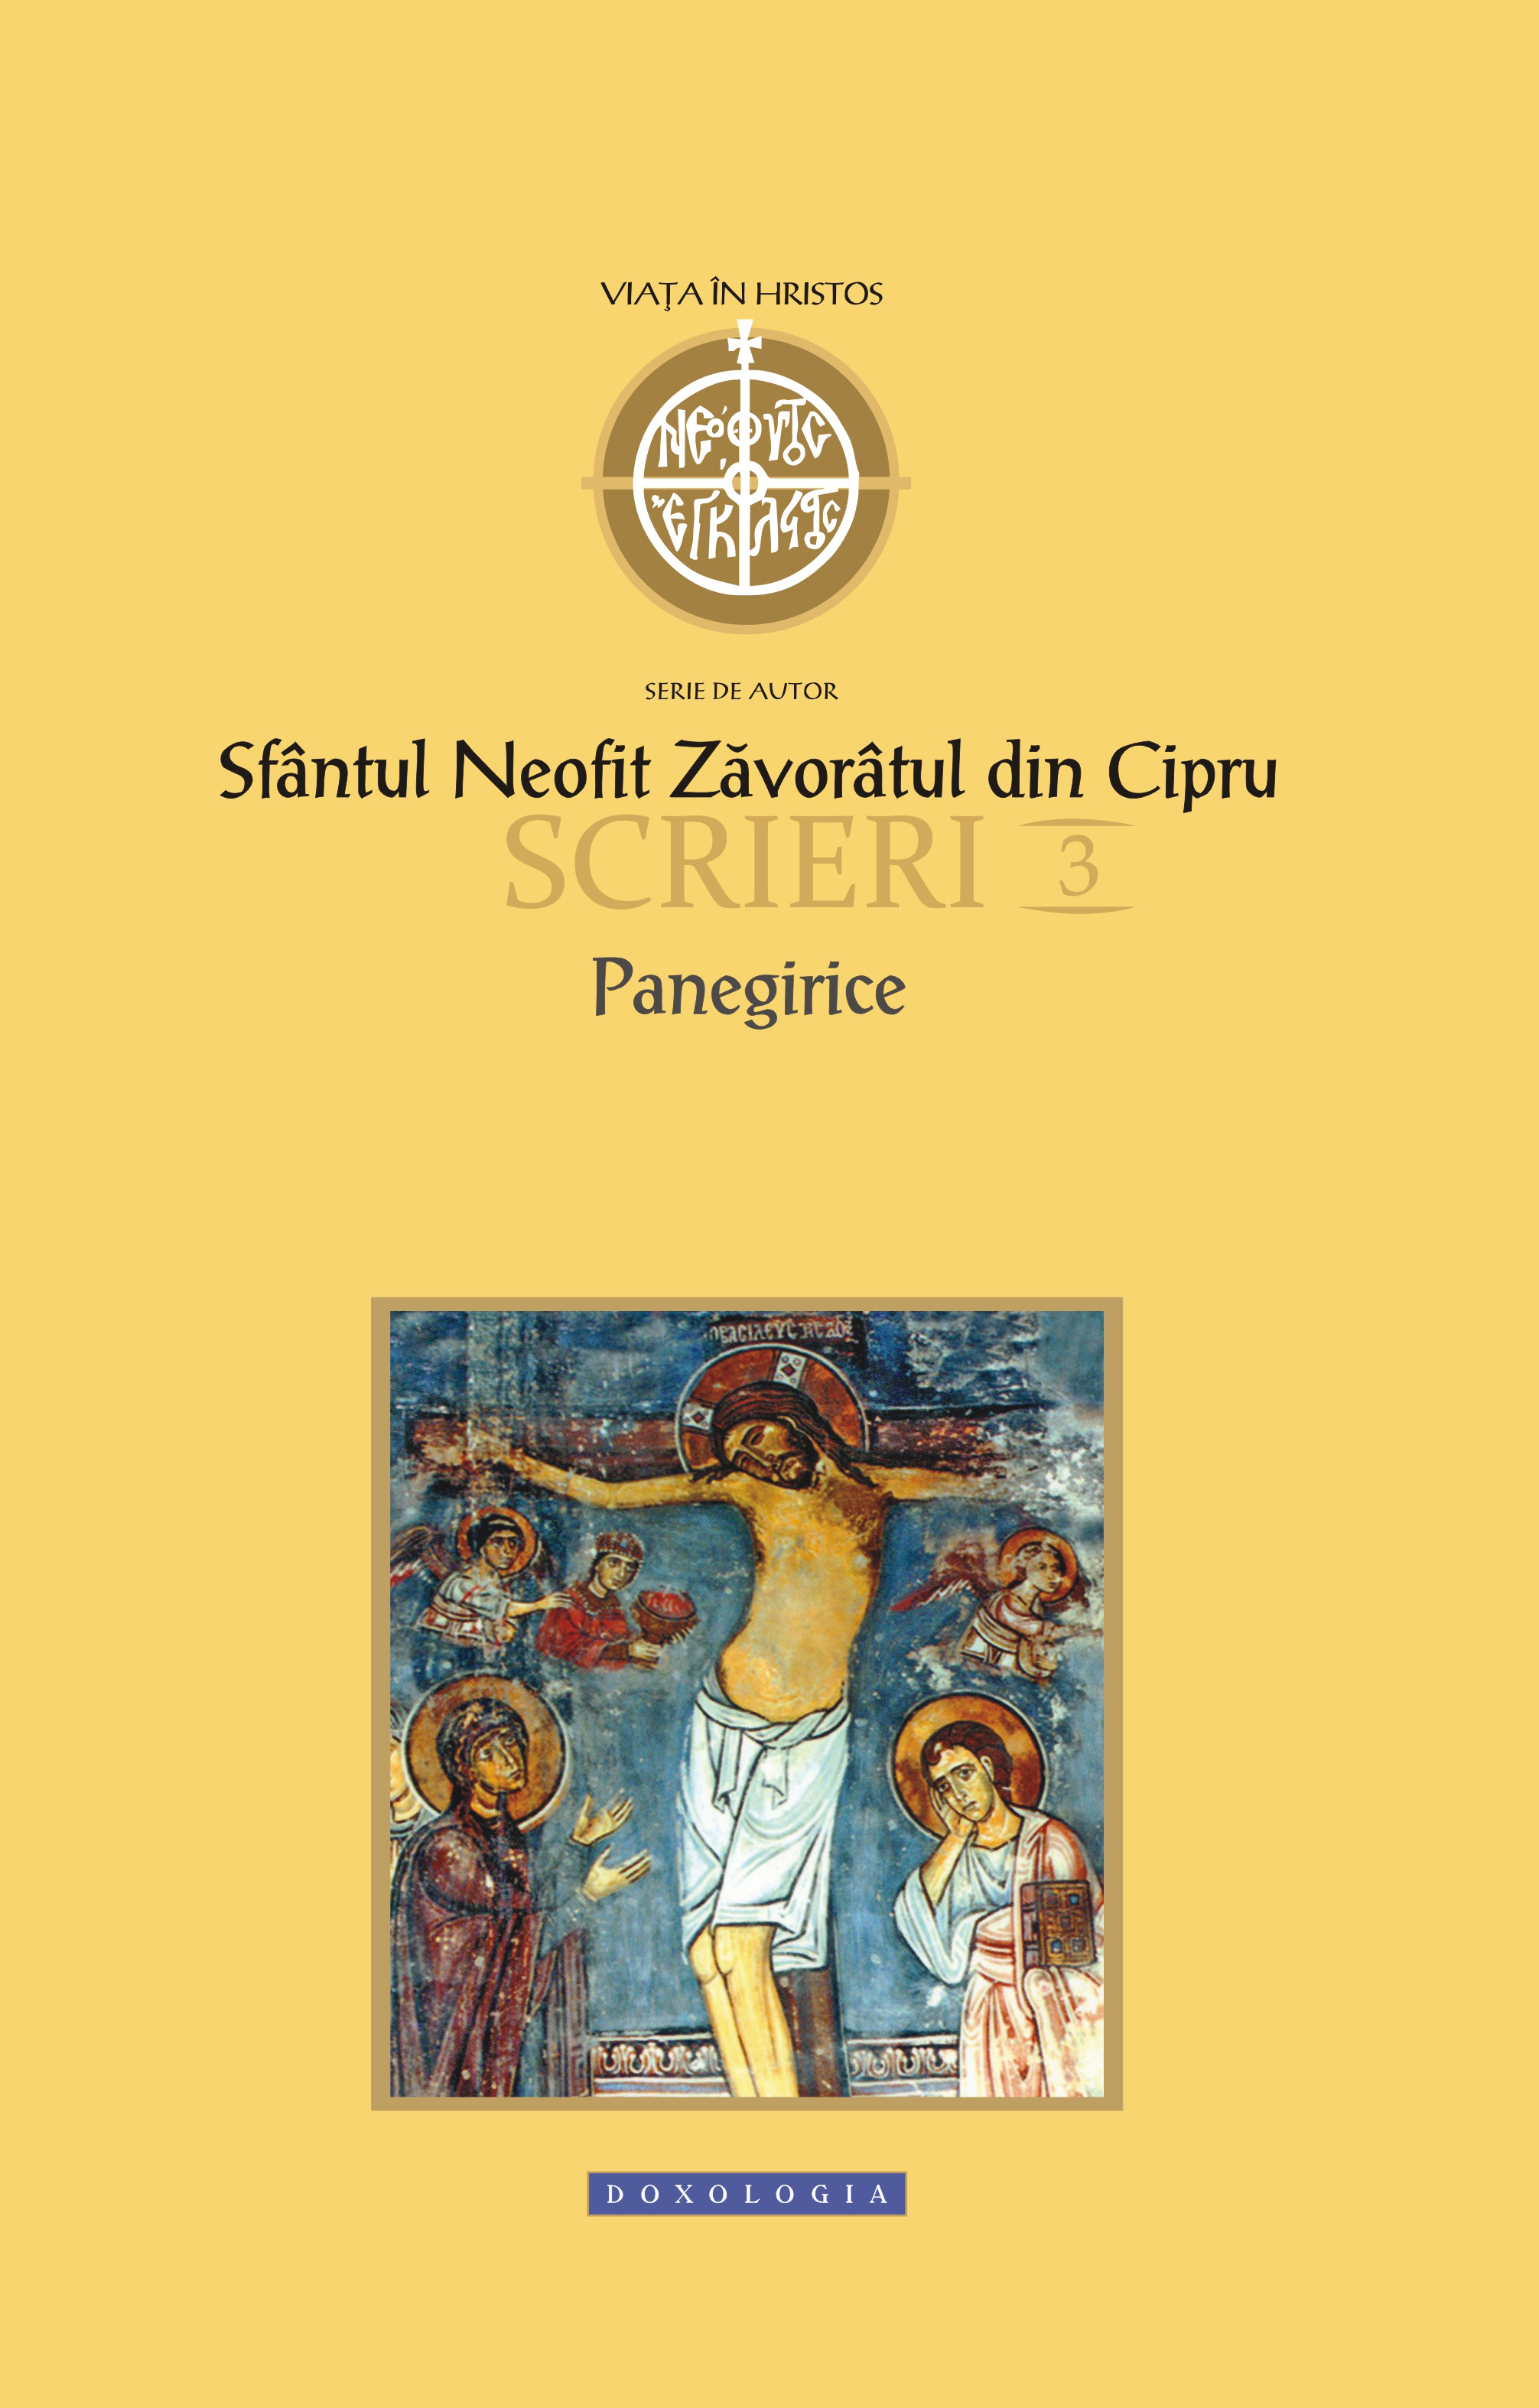 Scrieri 3: Panegirice - Sfantul Neofit Zavoratul din Cipru